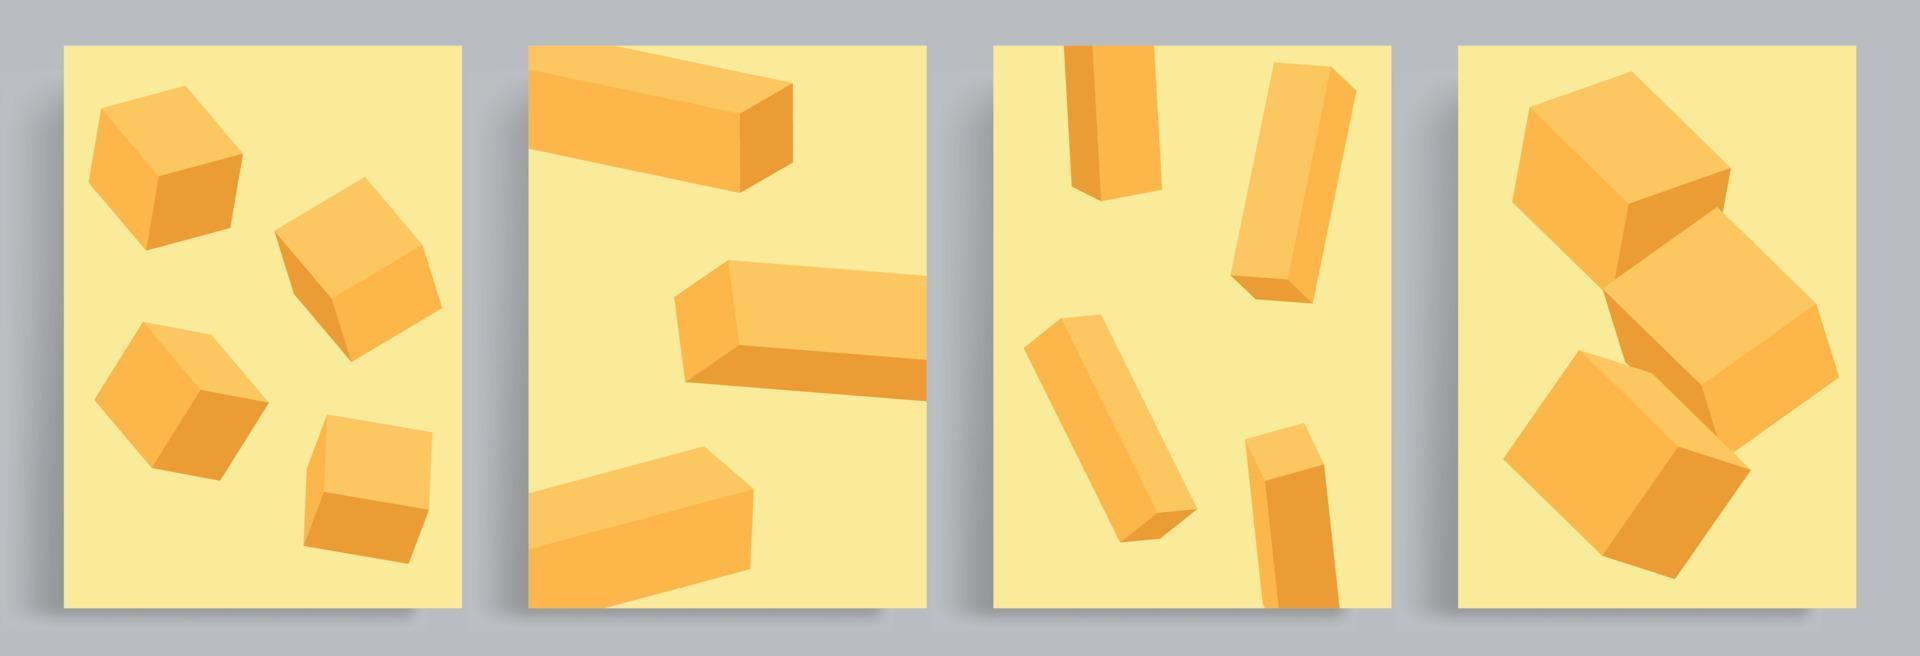 4 conjuntos de blocos de laranja 3d abstratos minimalistas. adequado para cartazes, capas de livros, brochuras, revistas, folhetos, folhetos. vetor